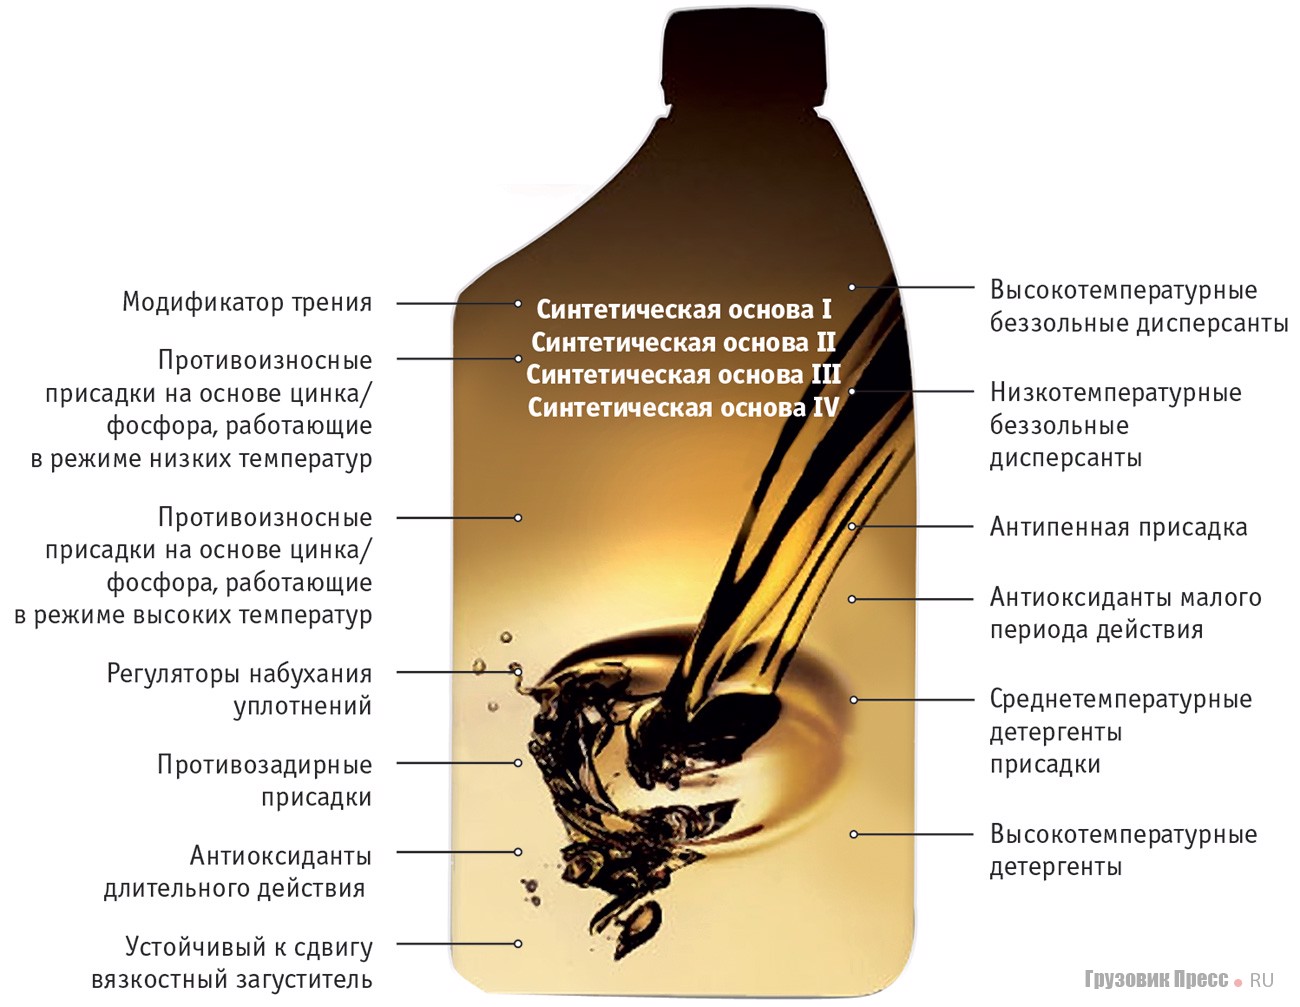 Важность замены моторного масла | auto-gl.ru